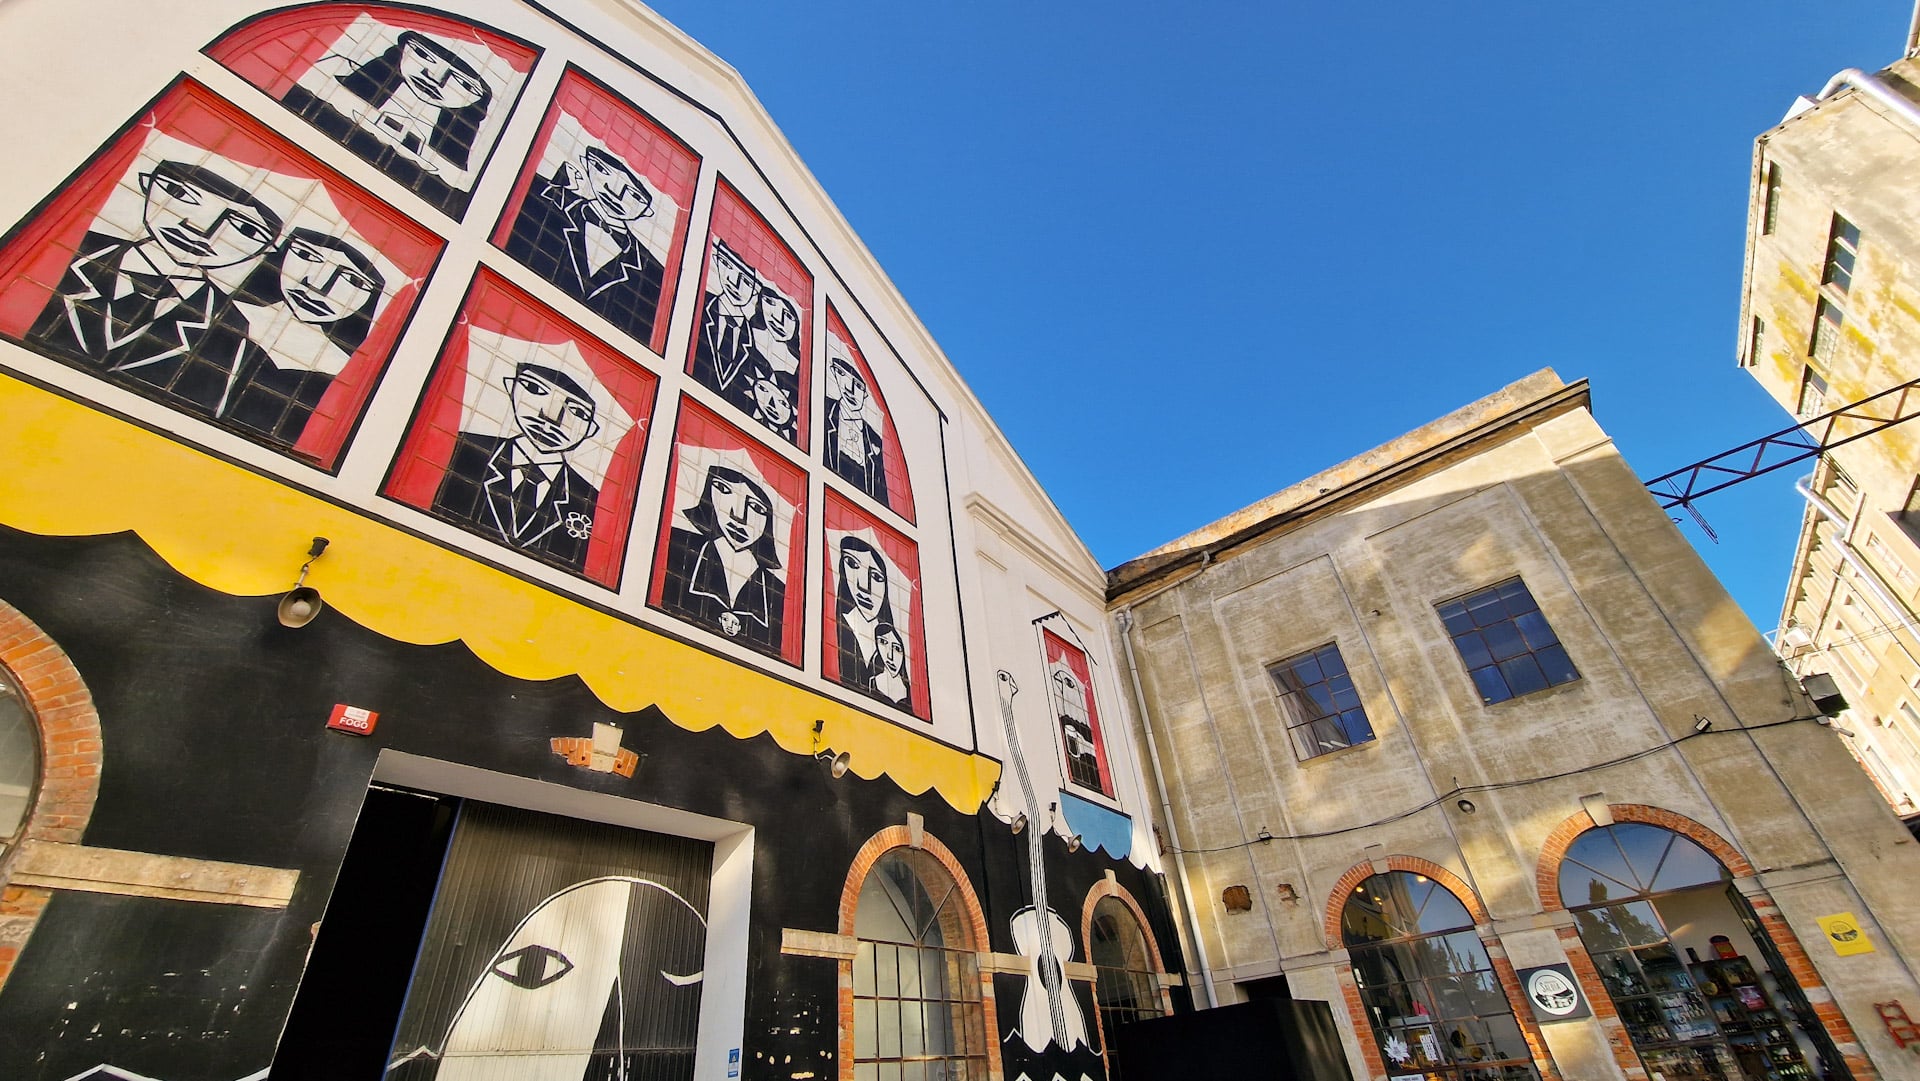 Alcântara és un dels districtes més de moda de Lisboa. És conegut per les seves galeries d'art contemporani, restaurants creatius i bars